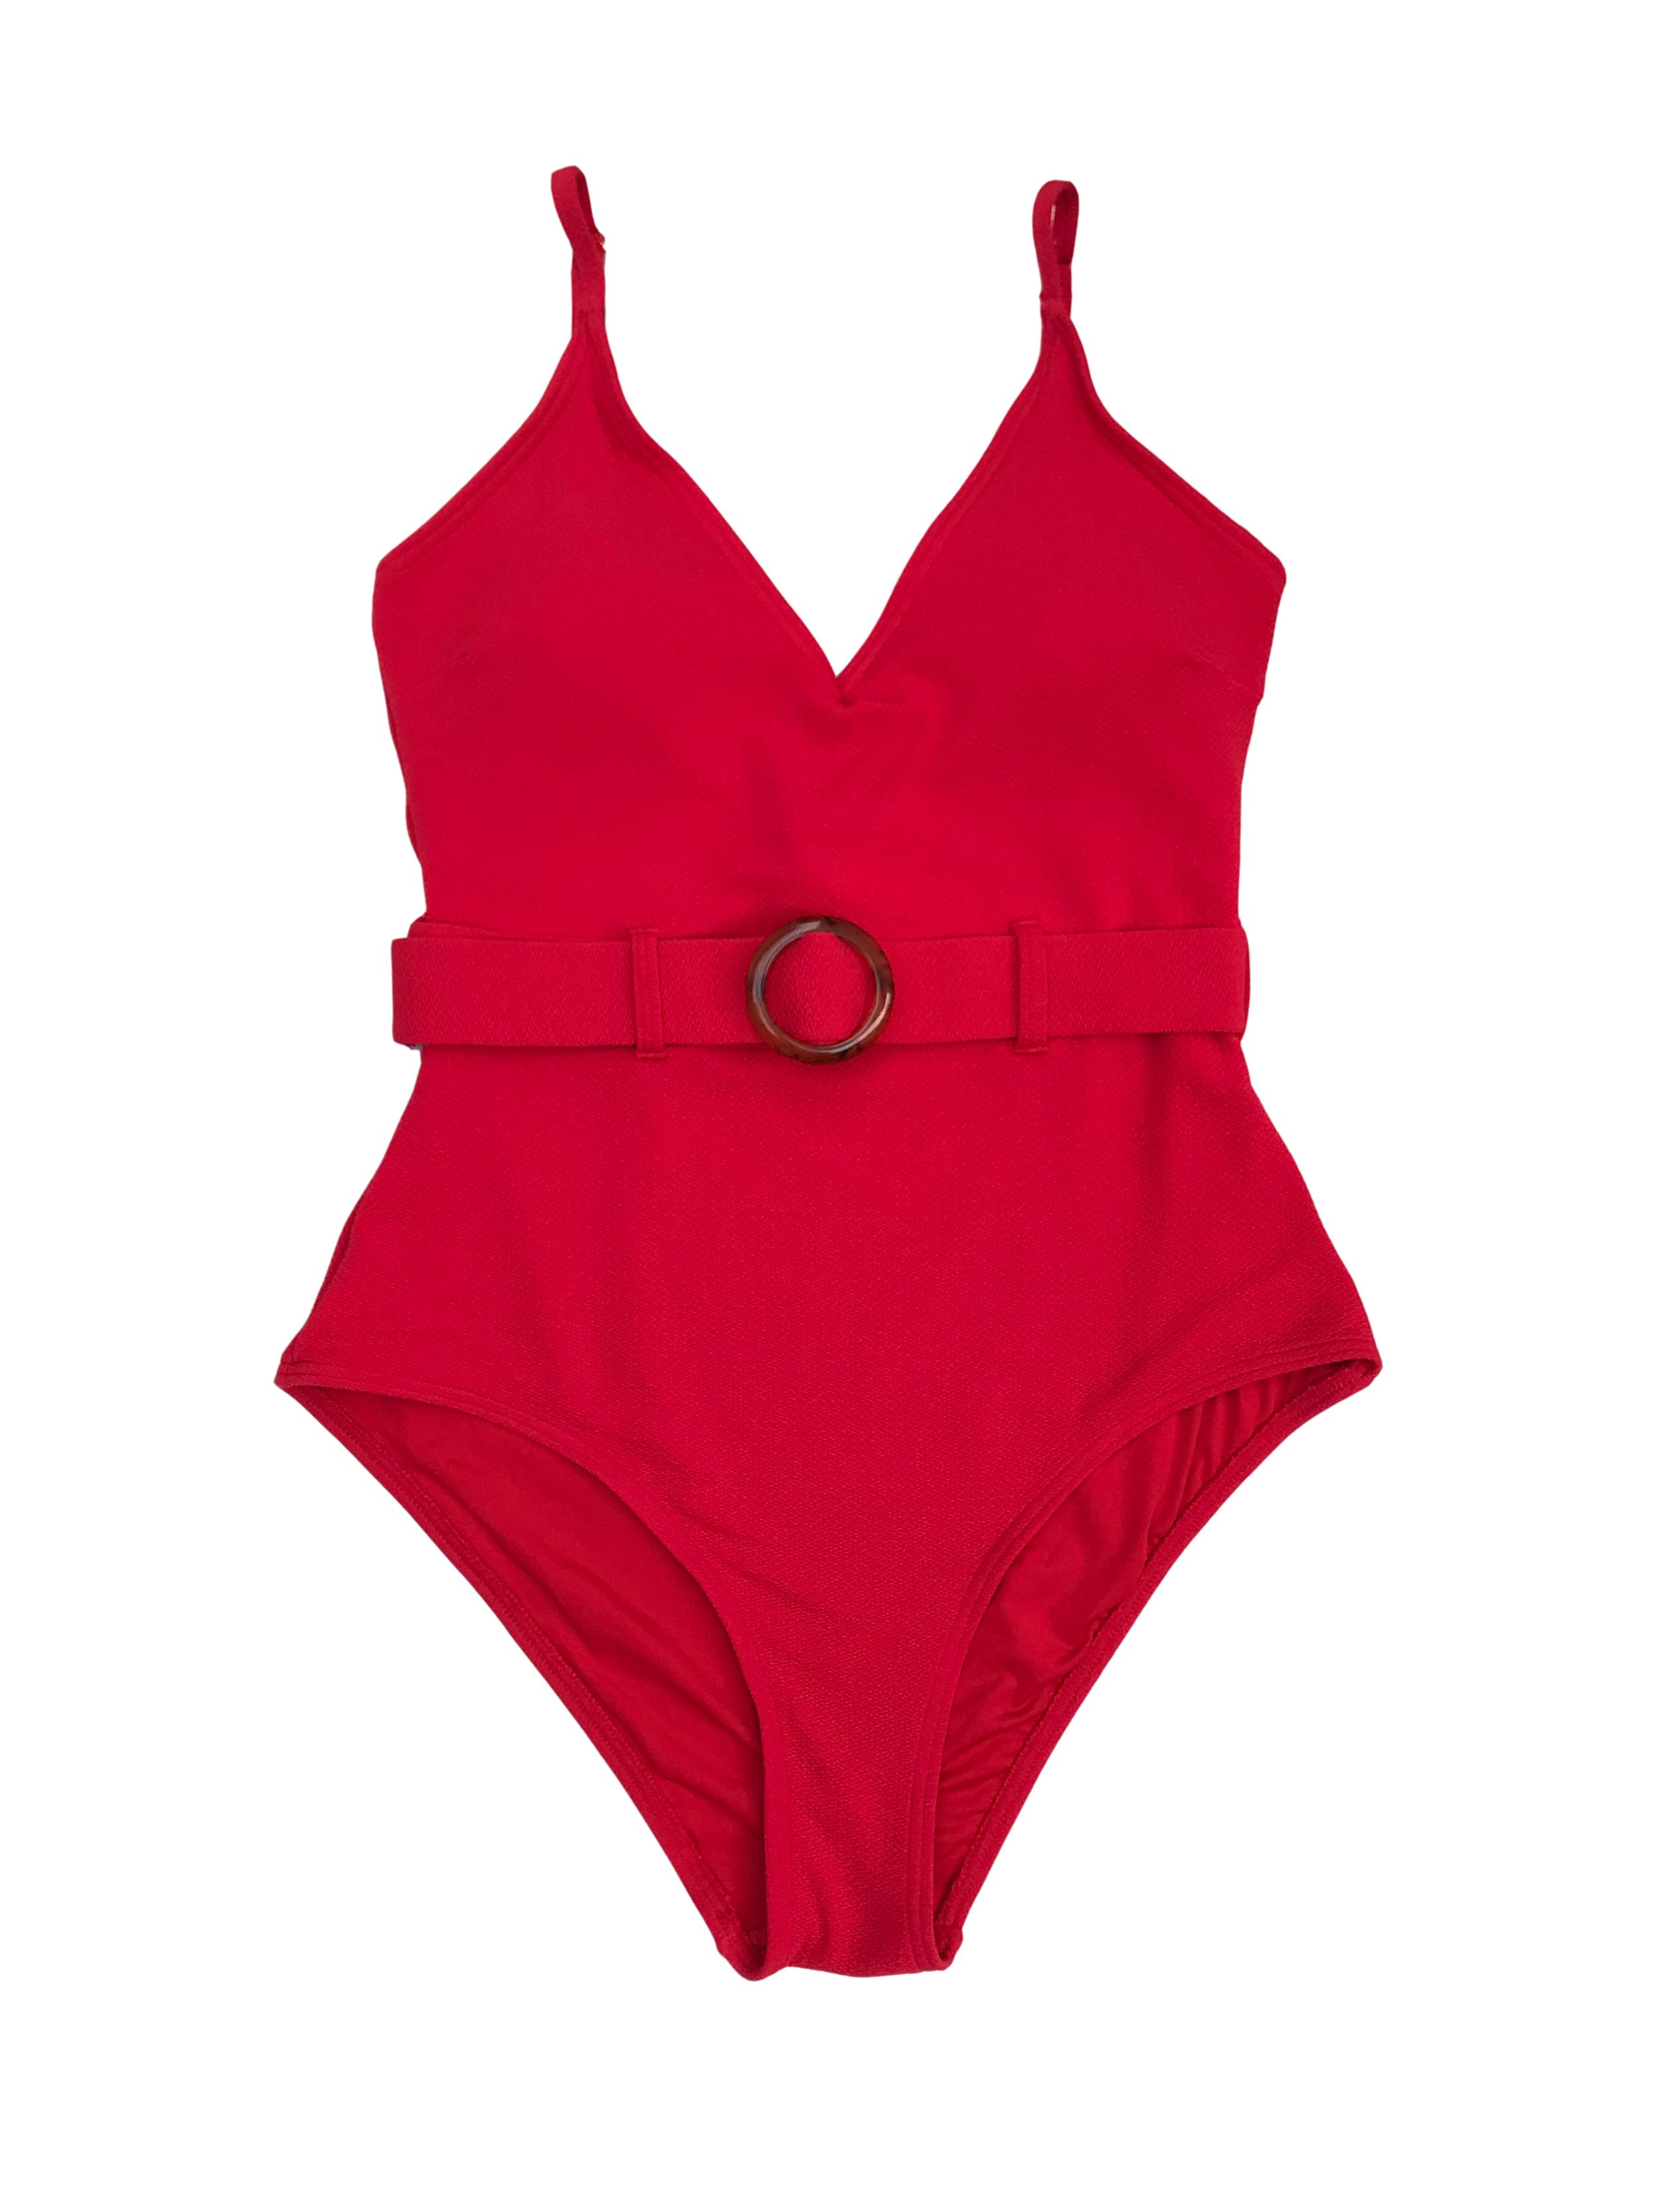 Roba de baño New Look roja con cinturón, forrada, lleva copas. Precio original S/ 129